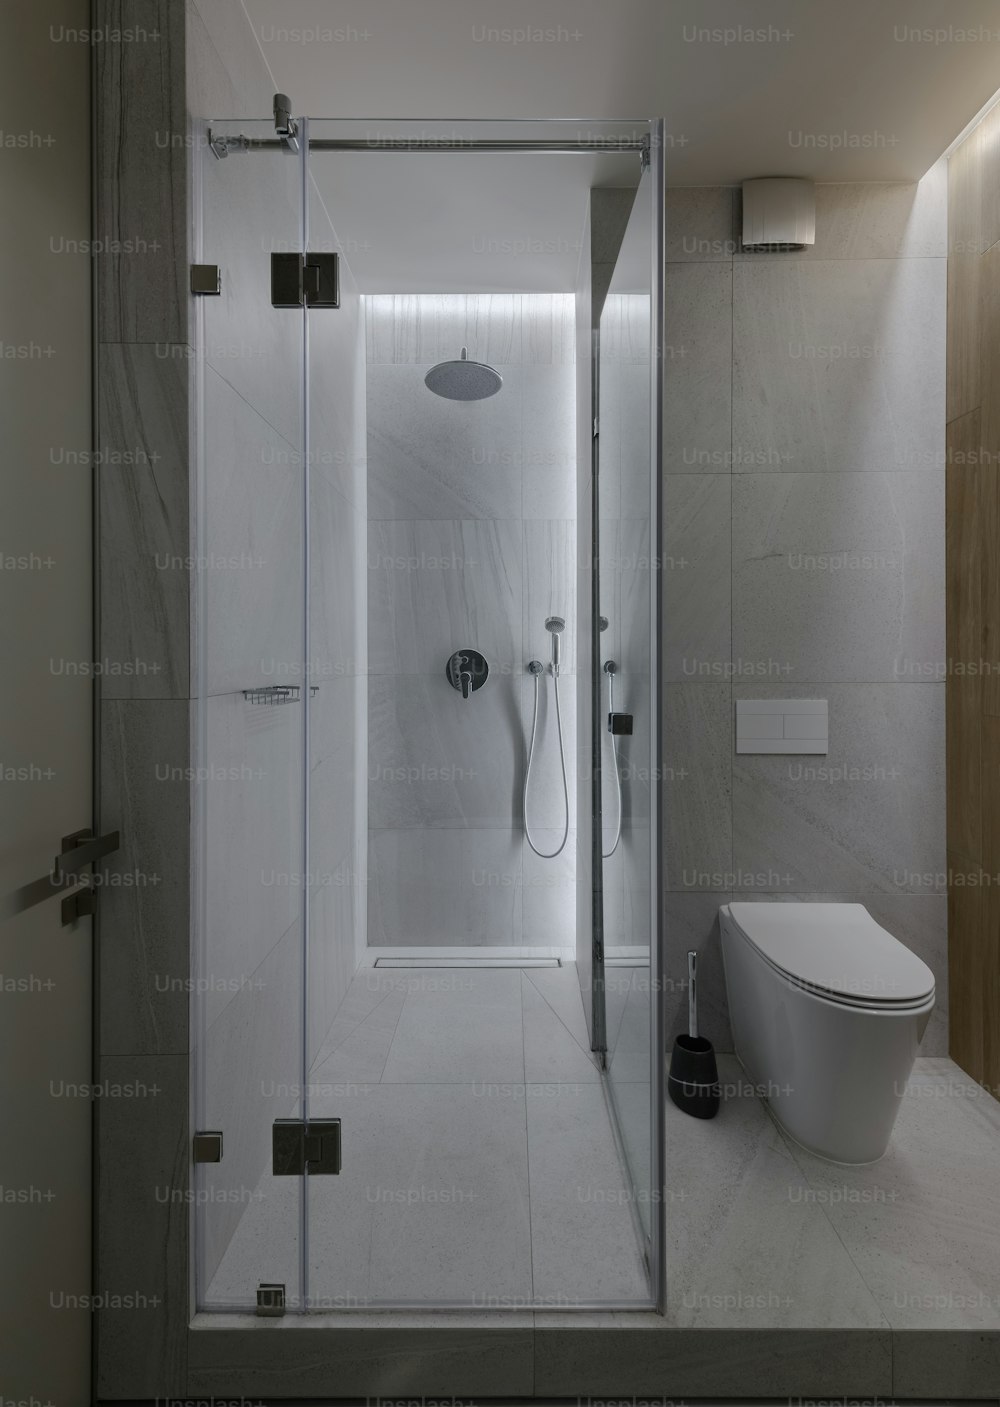 샤워실이 있는 현대적인 욕실